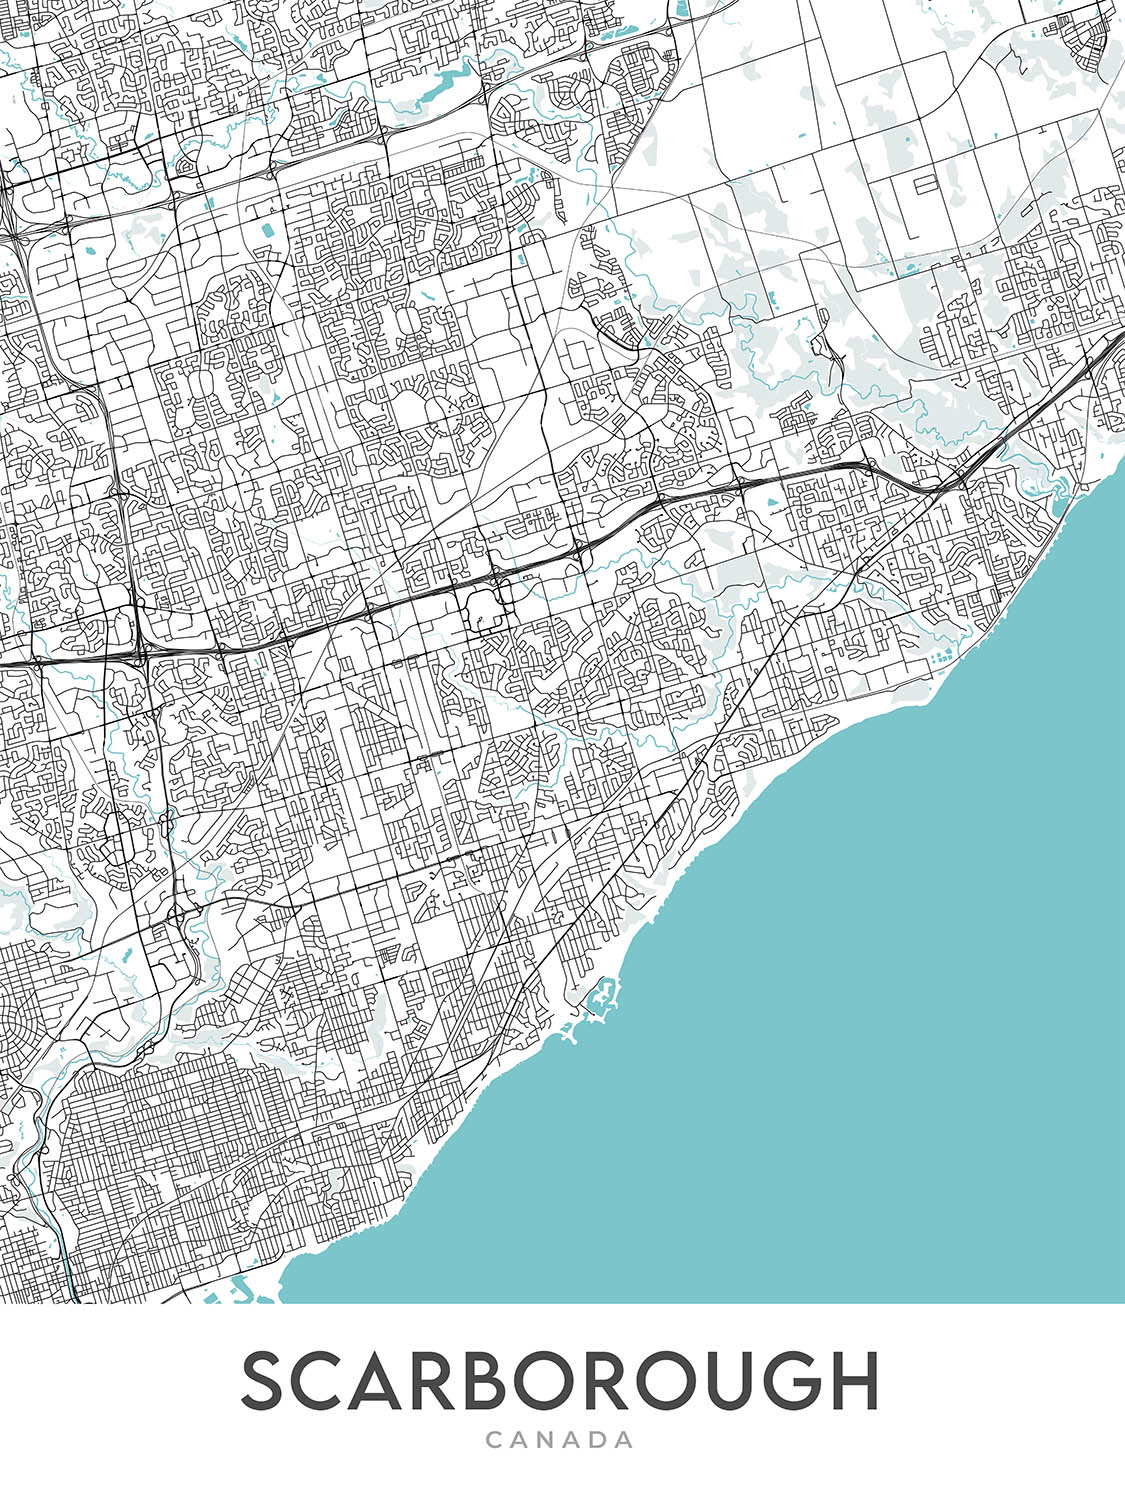 Moderner Stadtplan von Scarborough, Kanada: Klippen, Zoo, Stadtzentrum